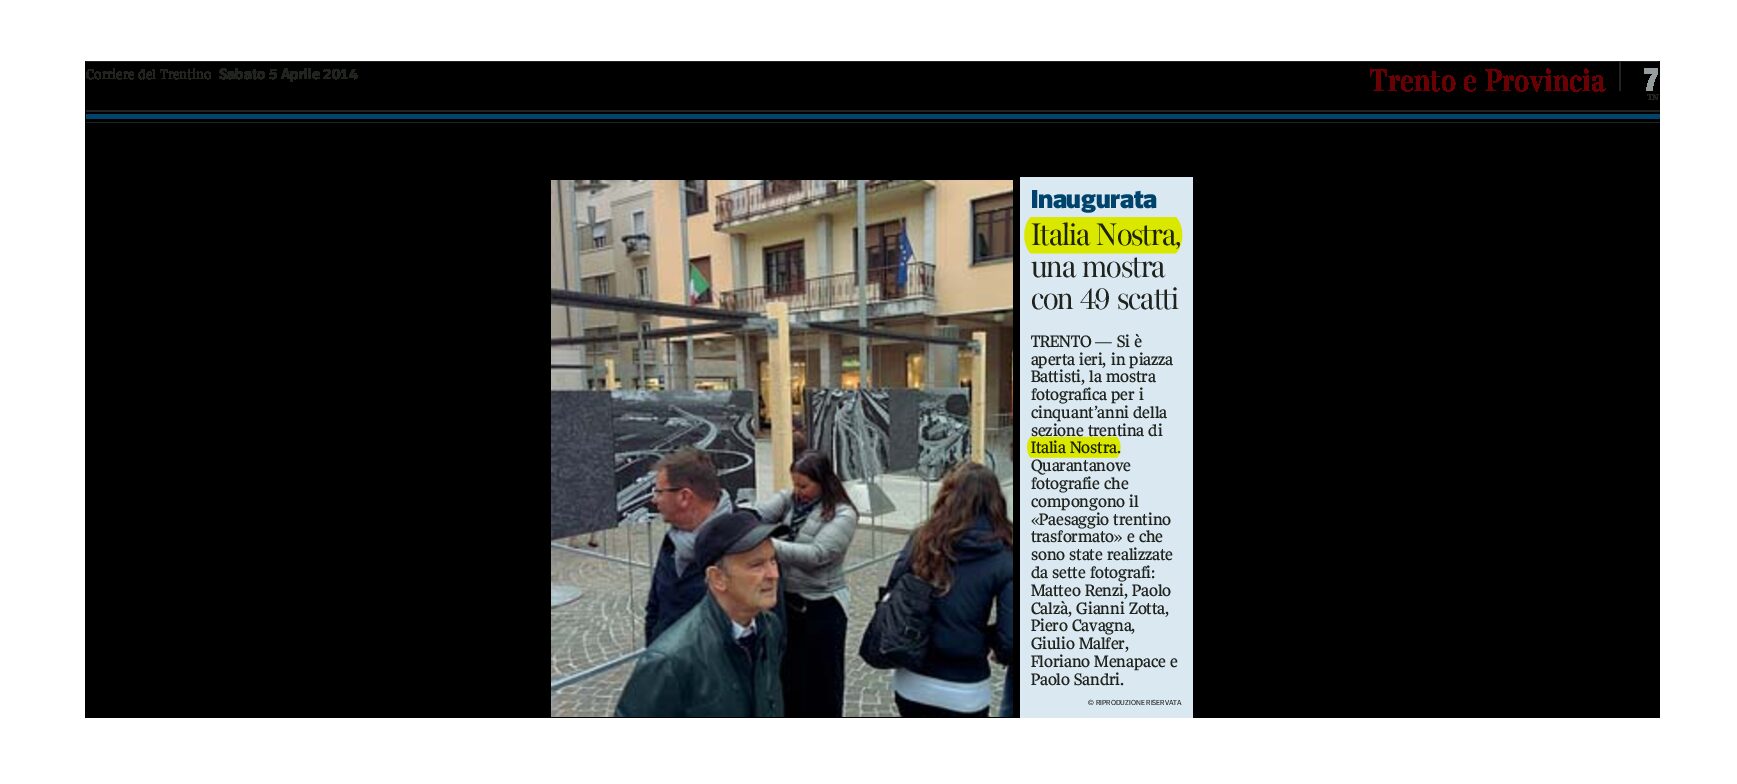 Italia Nostra: inaugurata ieri una mostra fotografica a Trento in piazza Battisti